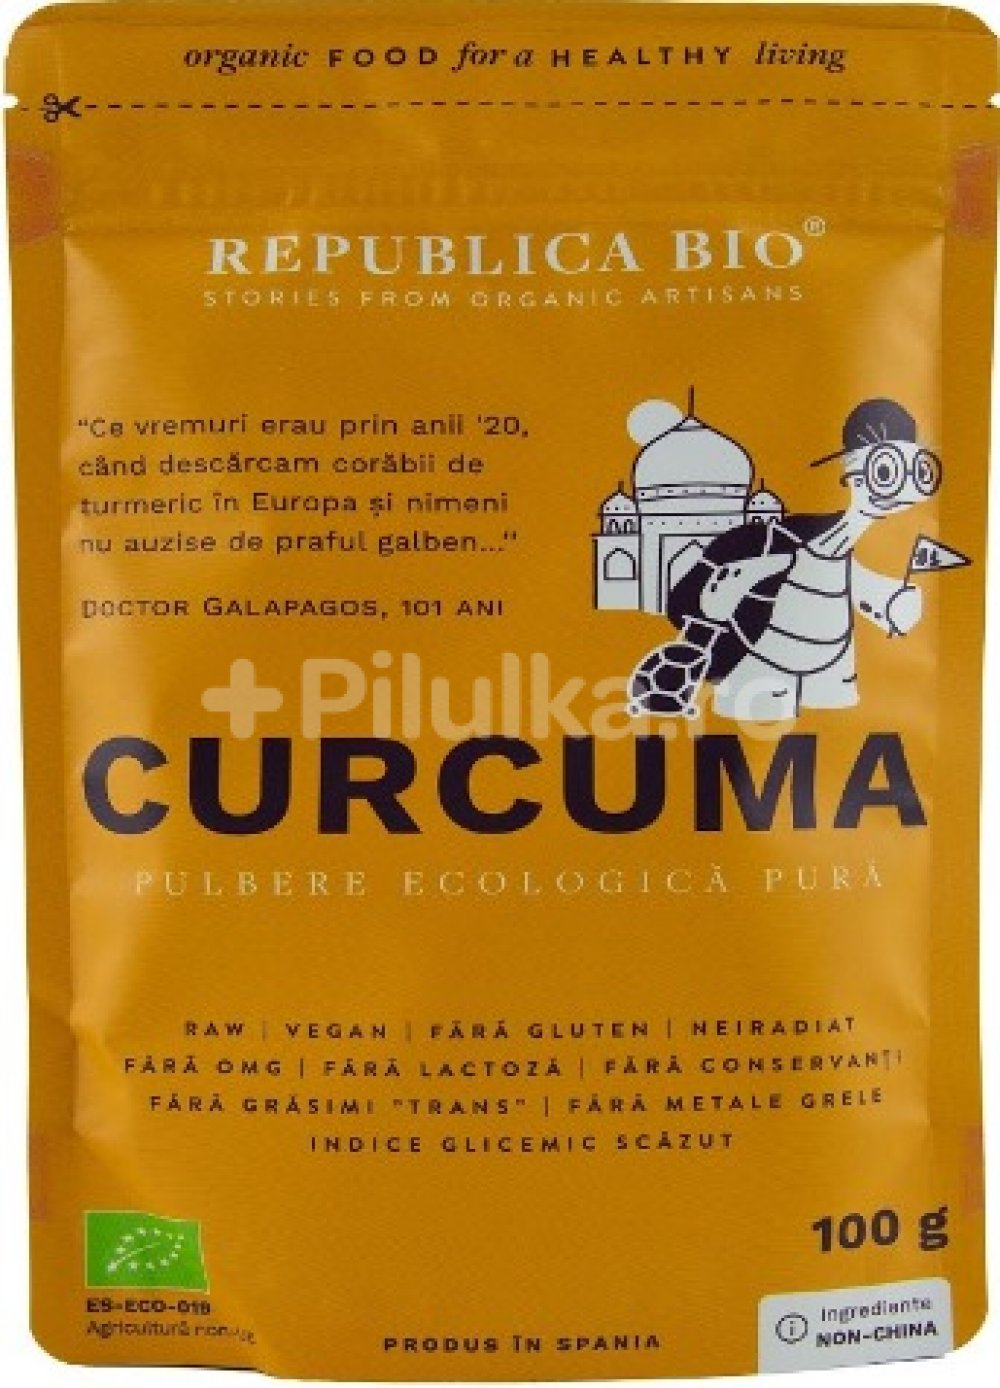 Curcuma - pulbere ecologica pura Republica BIO, 100 g | Republica BIO